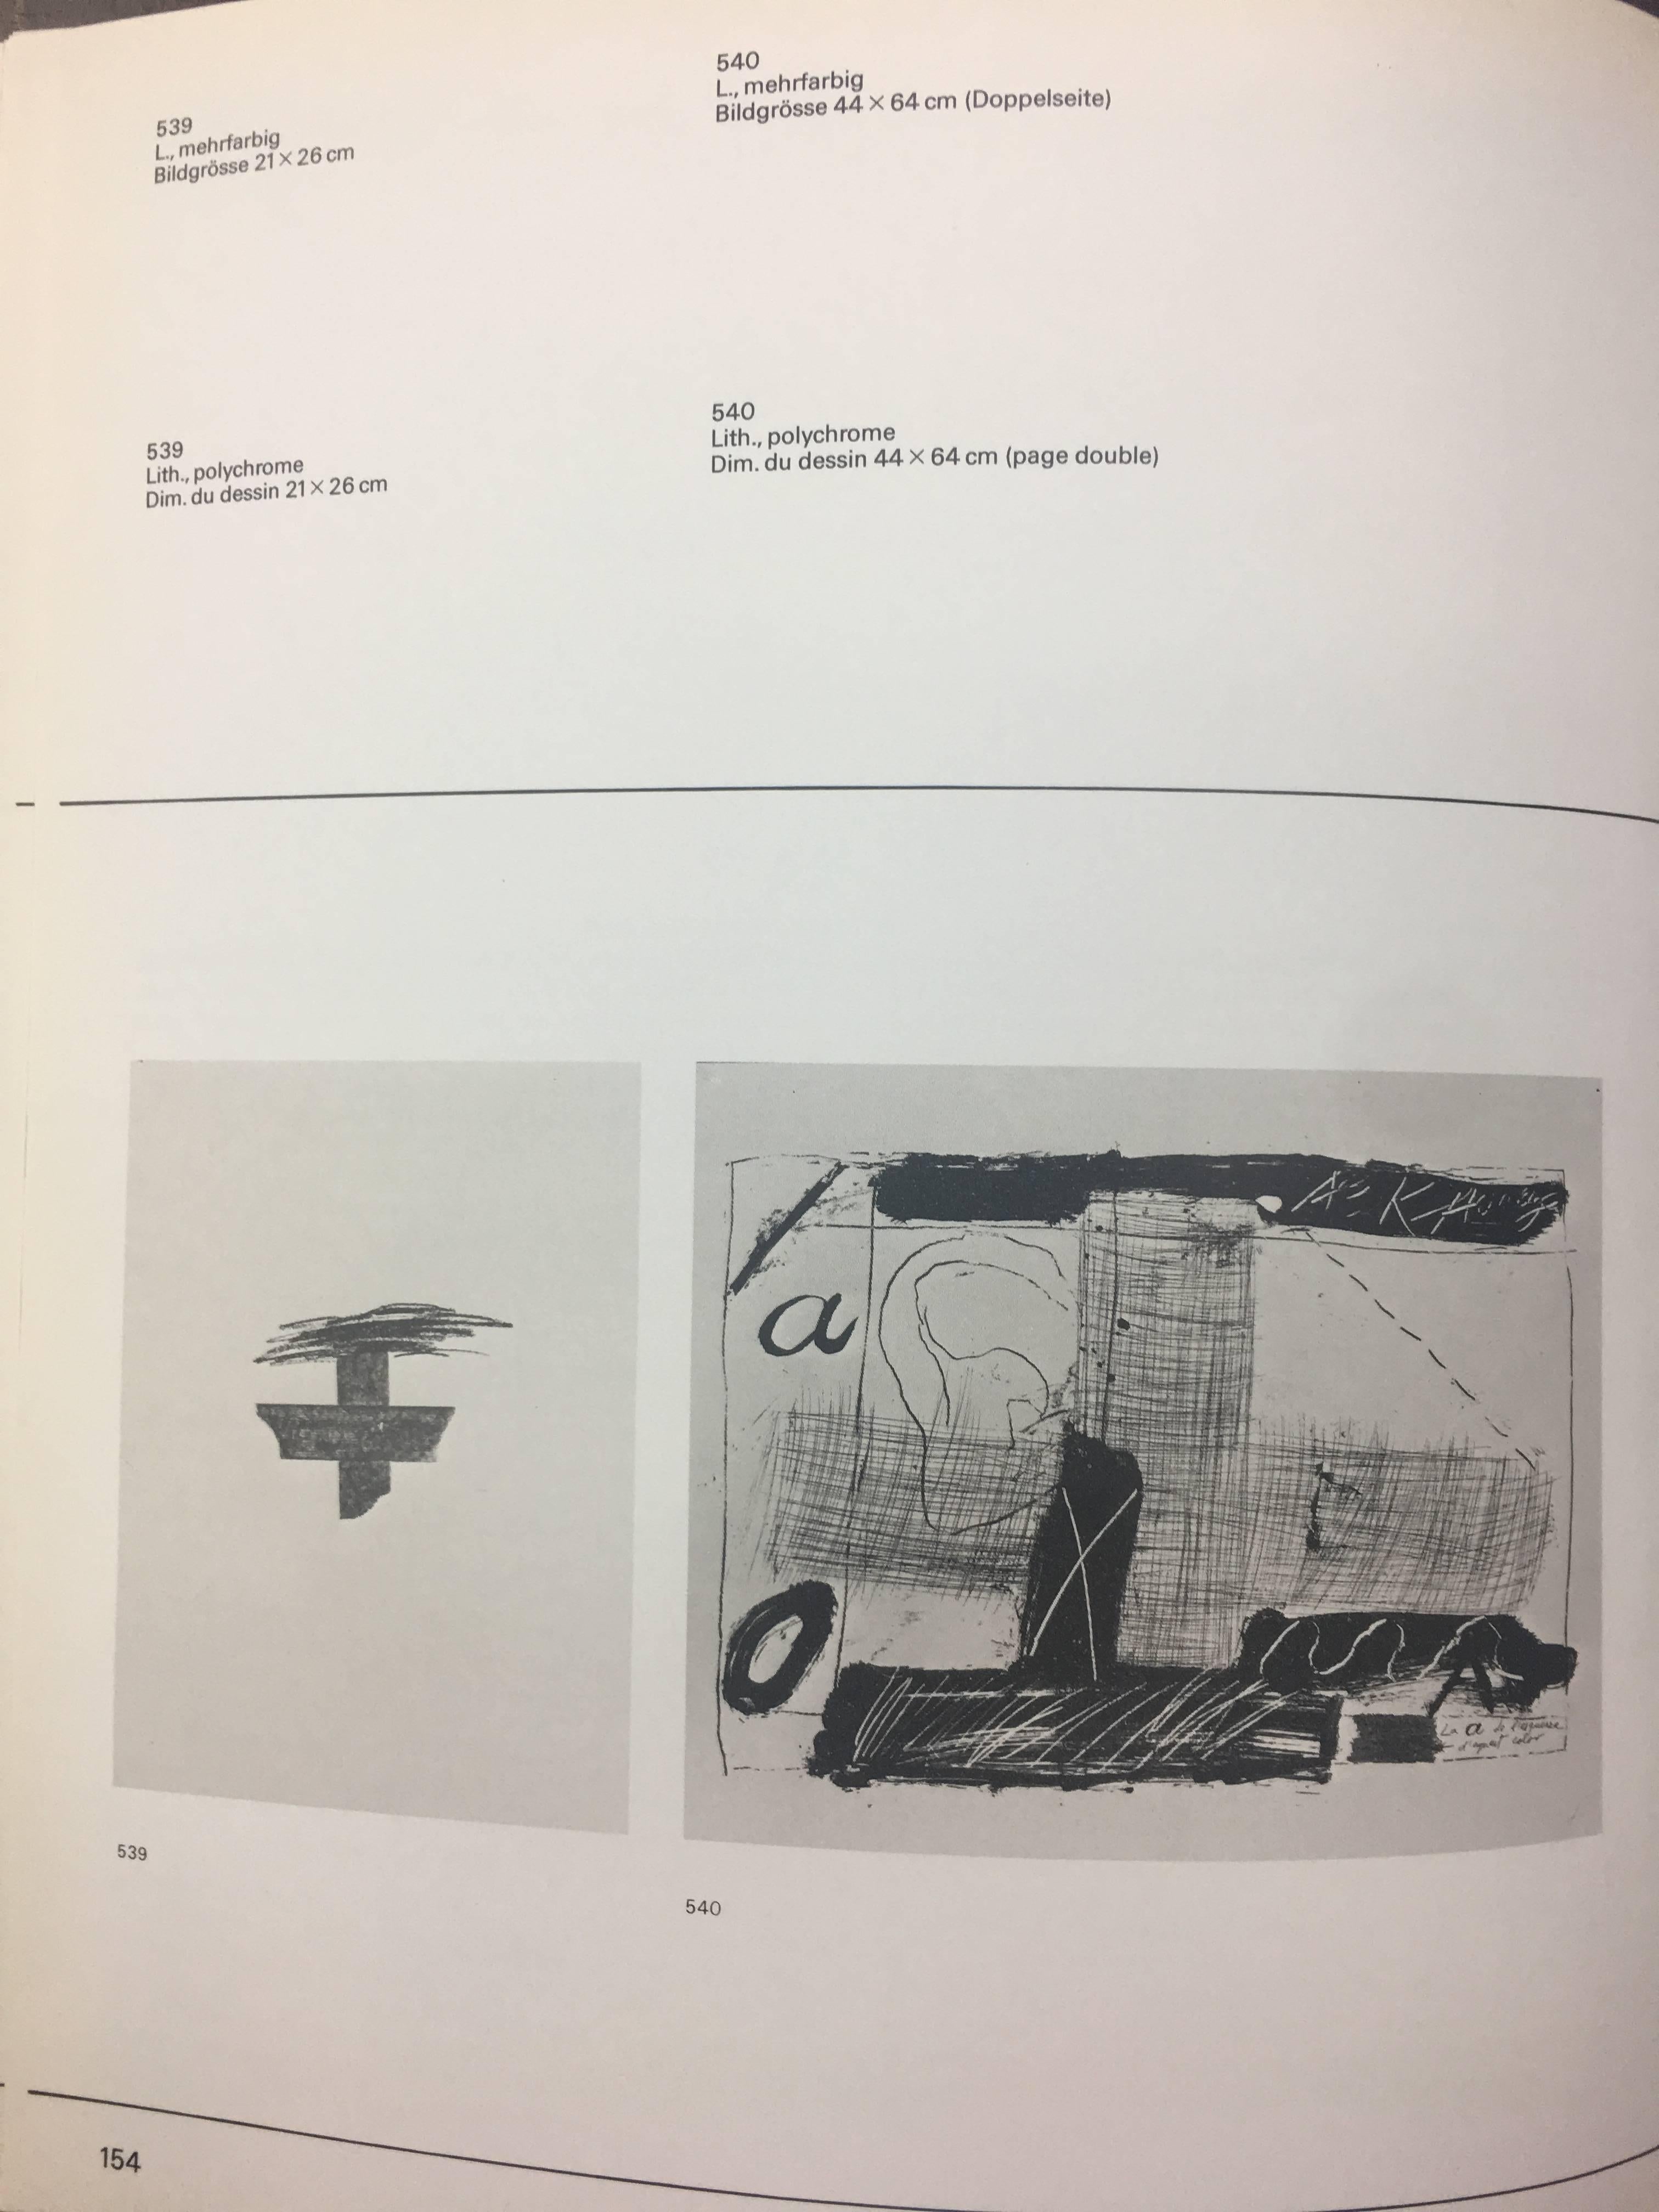 ANTONI TAPIES est le représentant Maximum de l'art abstrait espagnol du 20ème siècle. Ses œuvres sont représentées dans des musées et des fondations du monde entier.

TAPIES
Antoni Tapies Puig
1923-2012
